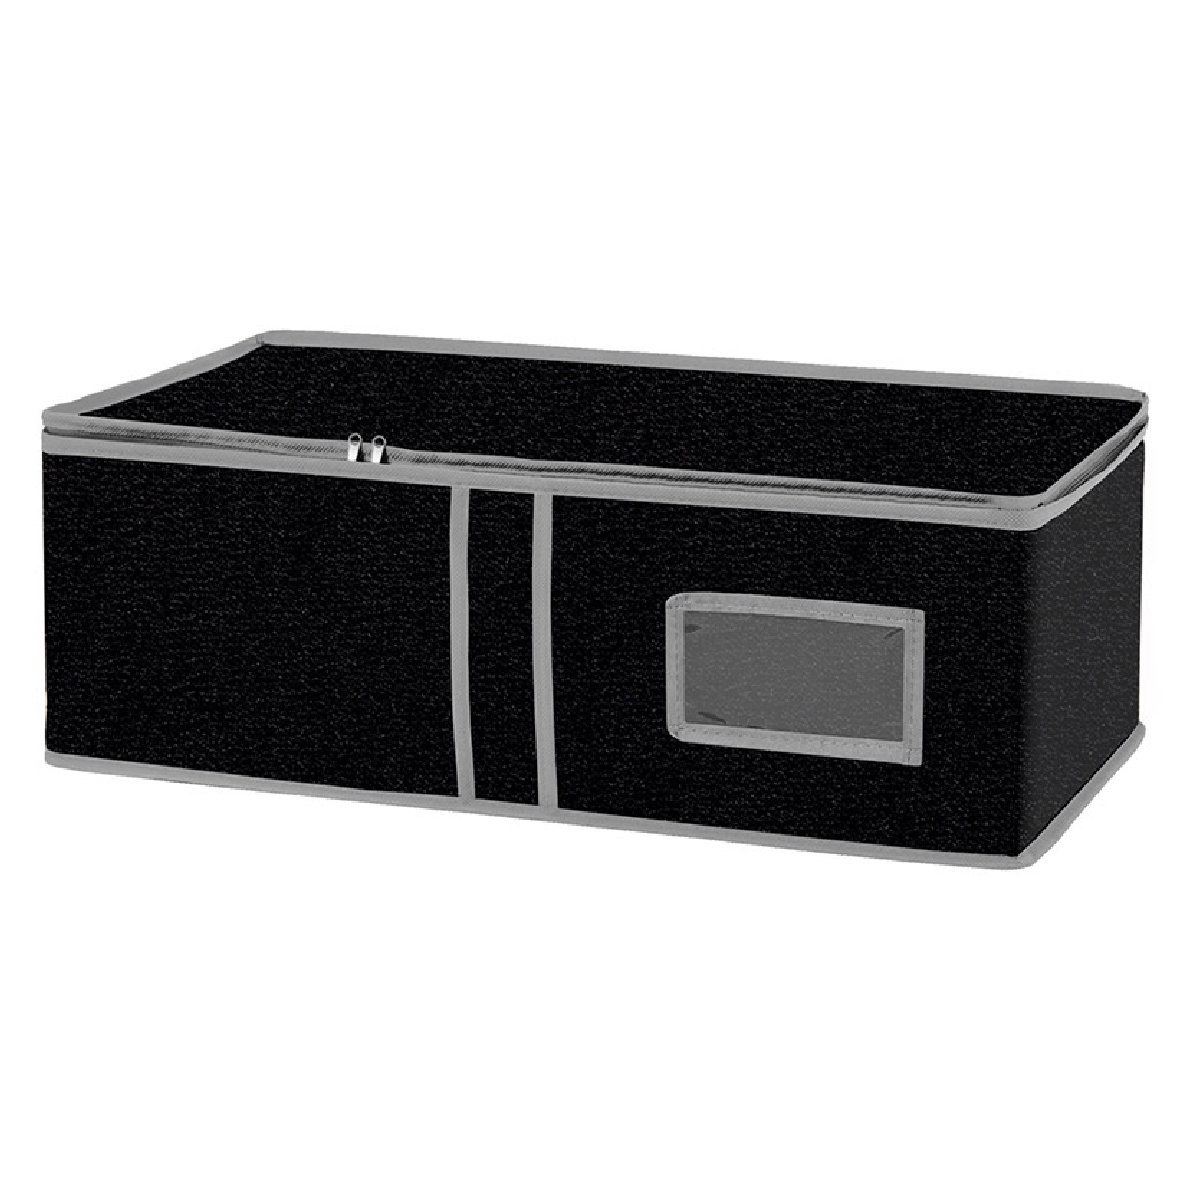 Ящик универсальный для хранения вещей Black 60x30x20 см (312615)Купить